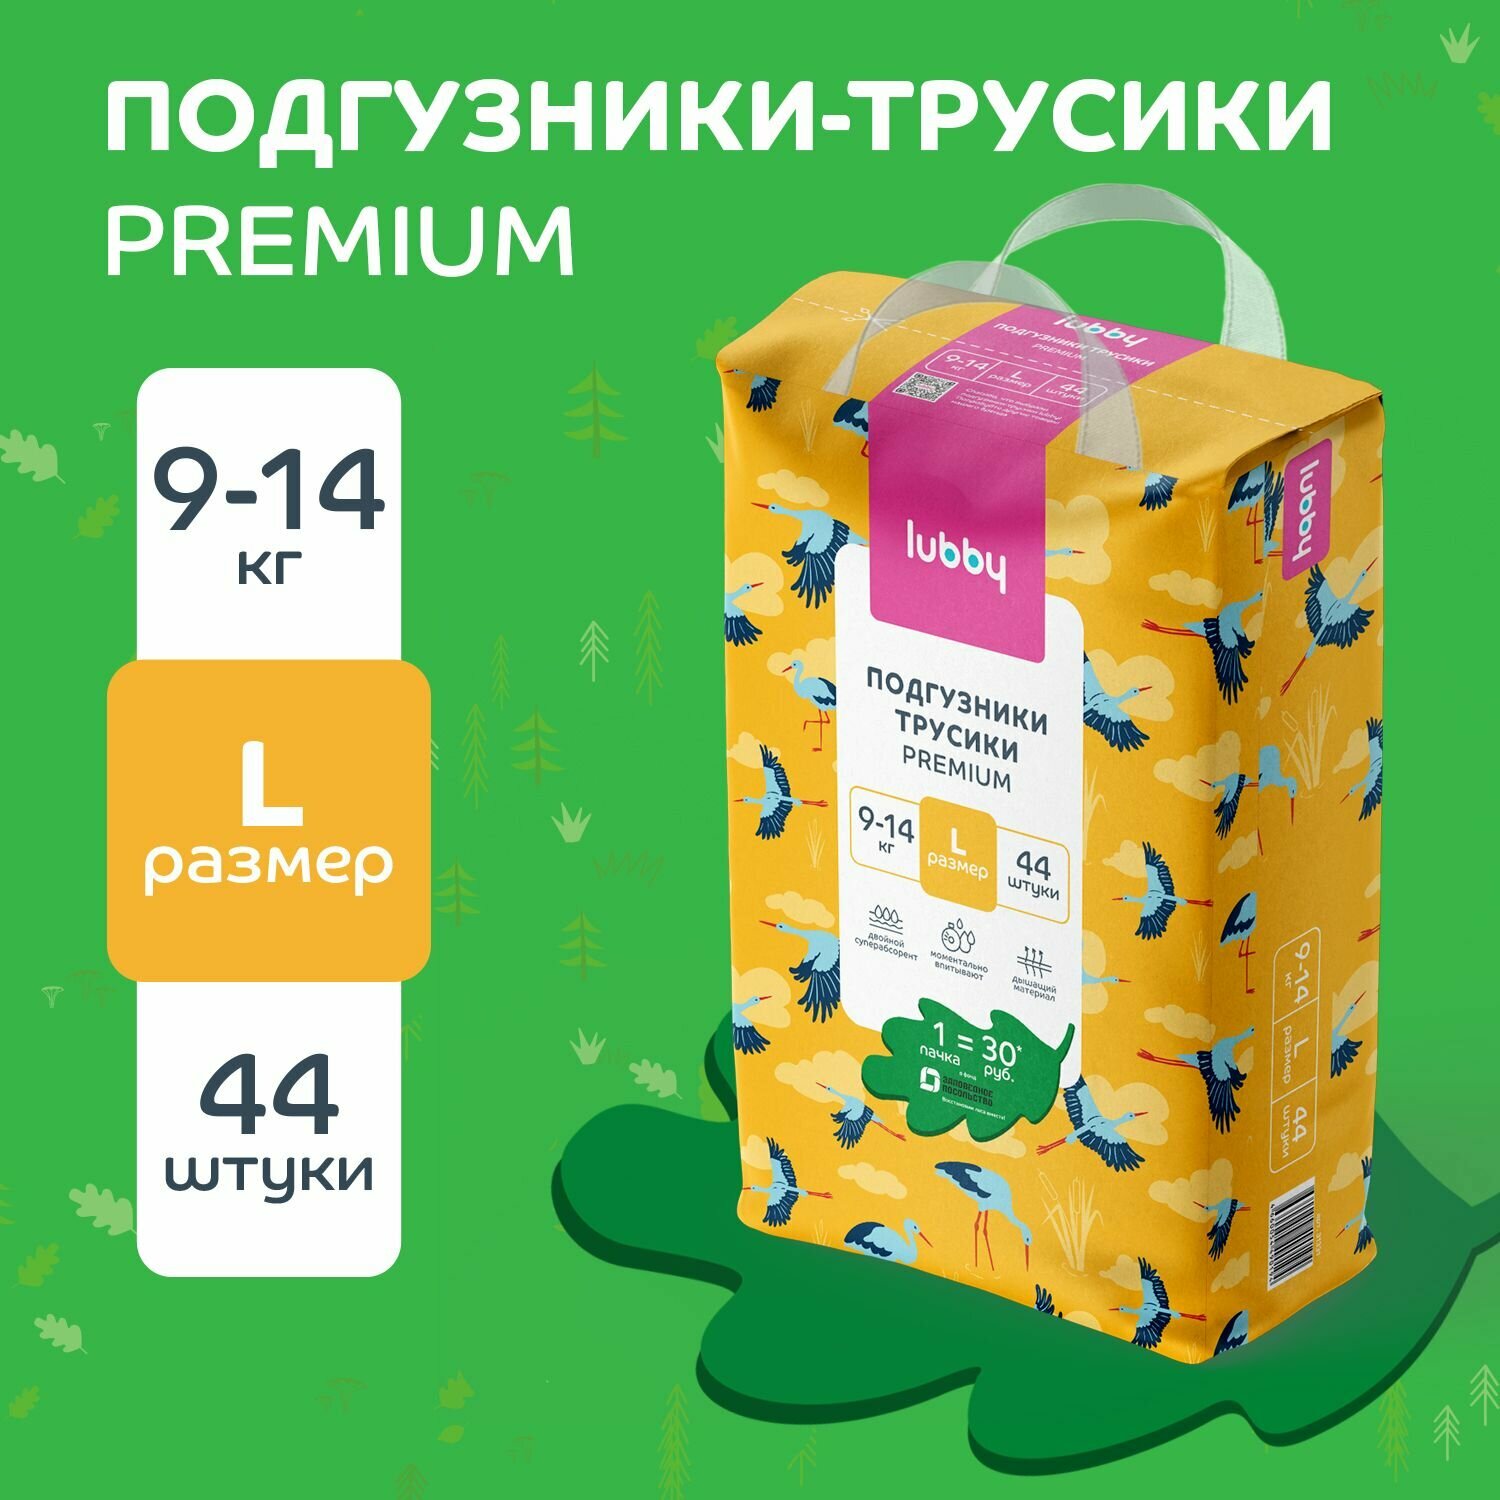 Подгузники-трусики для детей lubby PREMIUM, размер L (9-14 кг) с индикатором влаги, 44 шт в упаковке